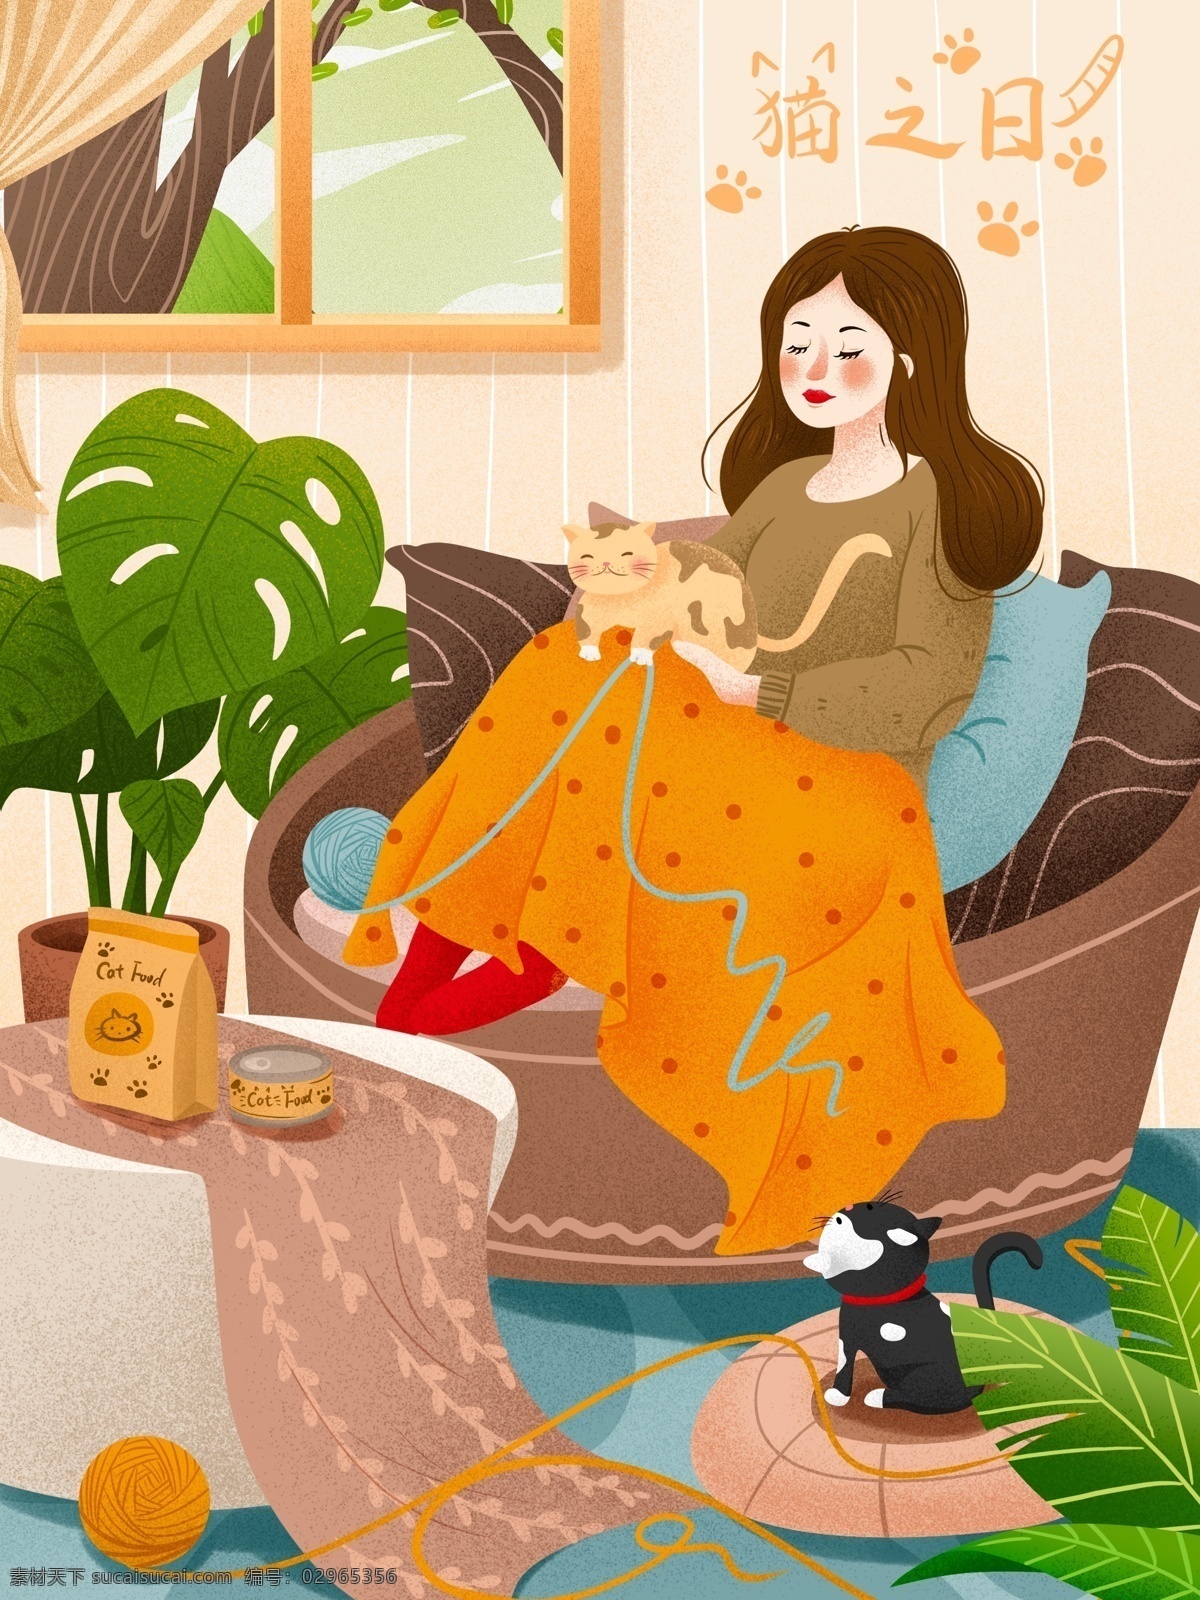 治愈 猫 日 女孩 猫咪 生活 插画 植物 盆栽 沙发 窗户 可爱猫咪 猫之日 猫粮 罐头 绿植 桌椅 居家生活 女孩与猫 生活插画